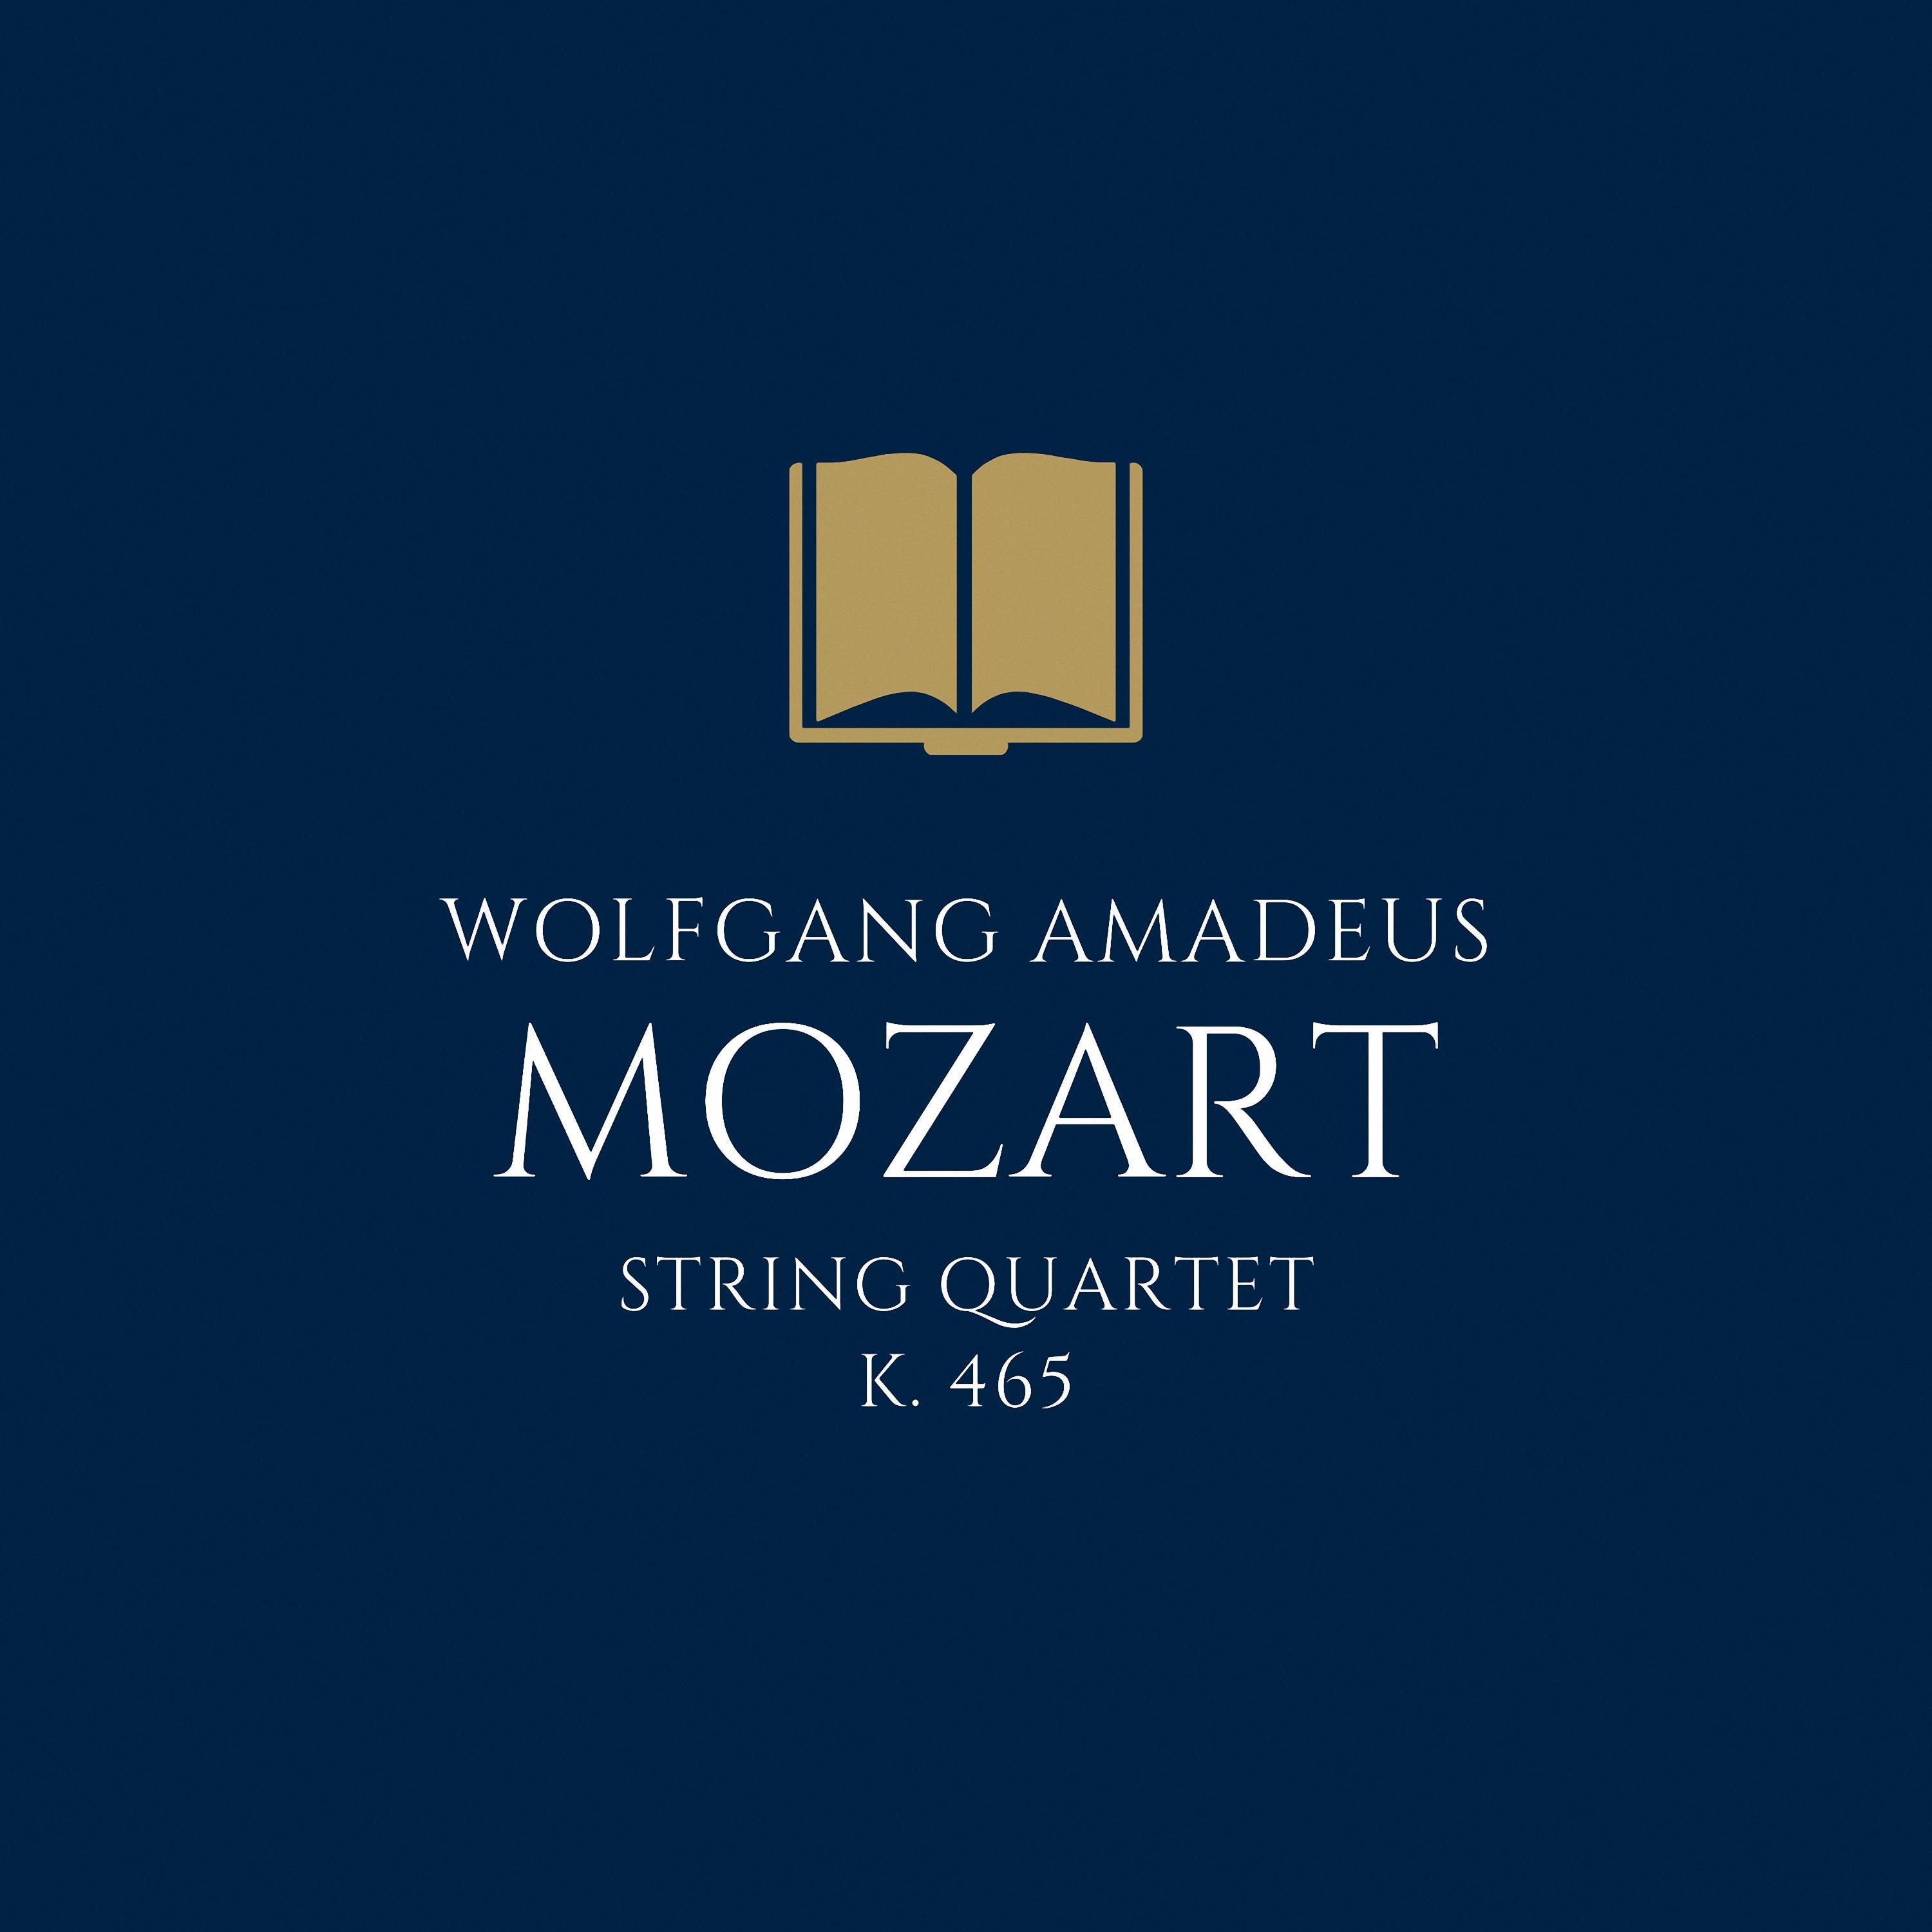 Mozart: String Quartet in C Major, K. 465